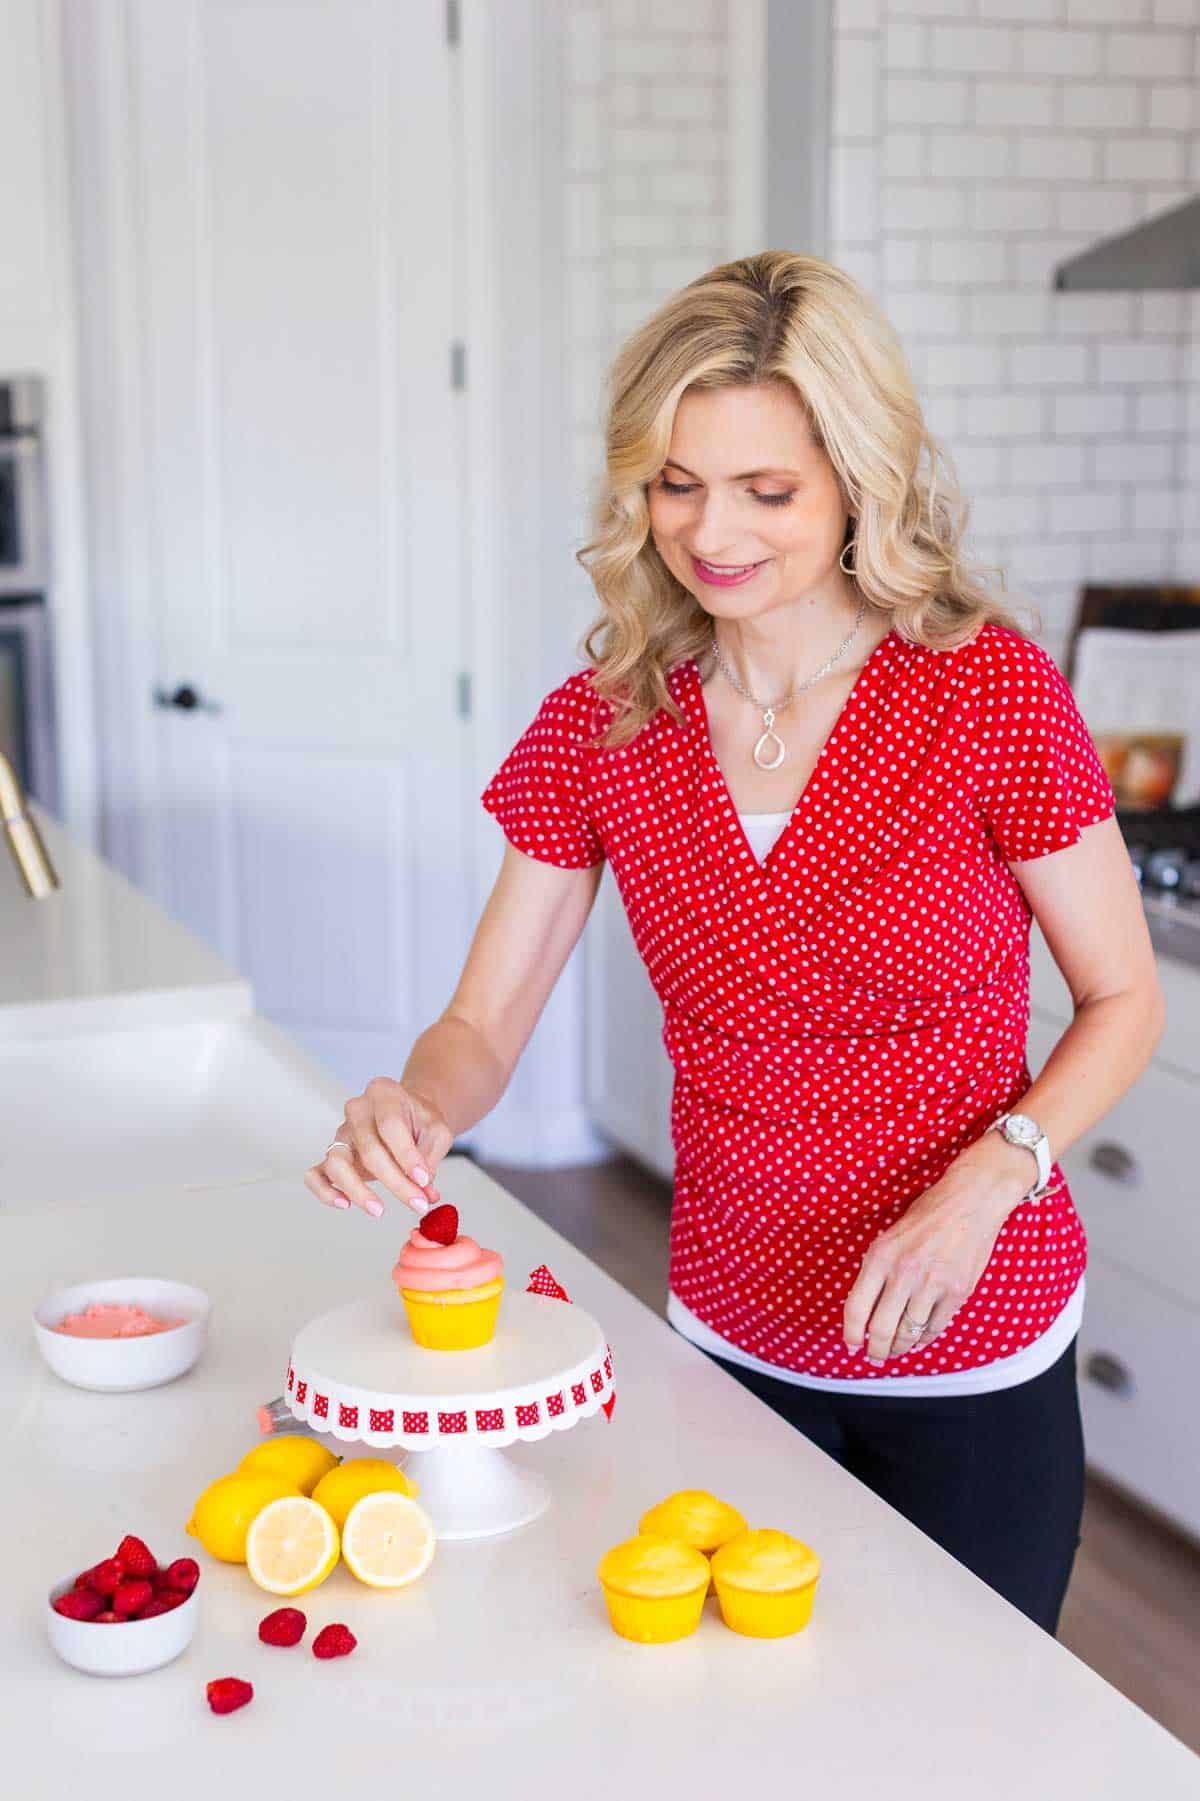 Woman decorating a lemon raspberry cupcake in a kitchen.